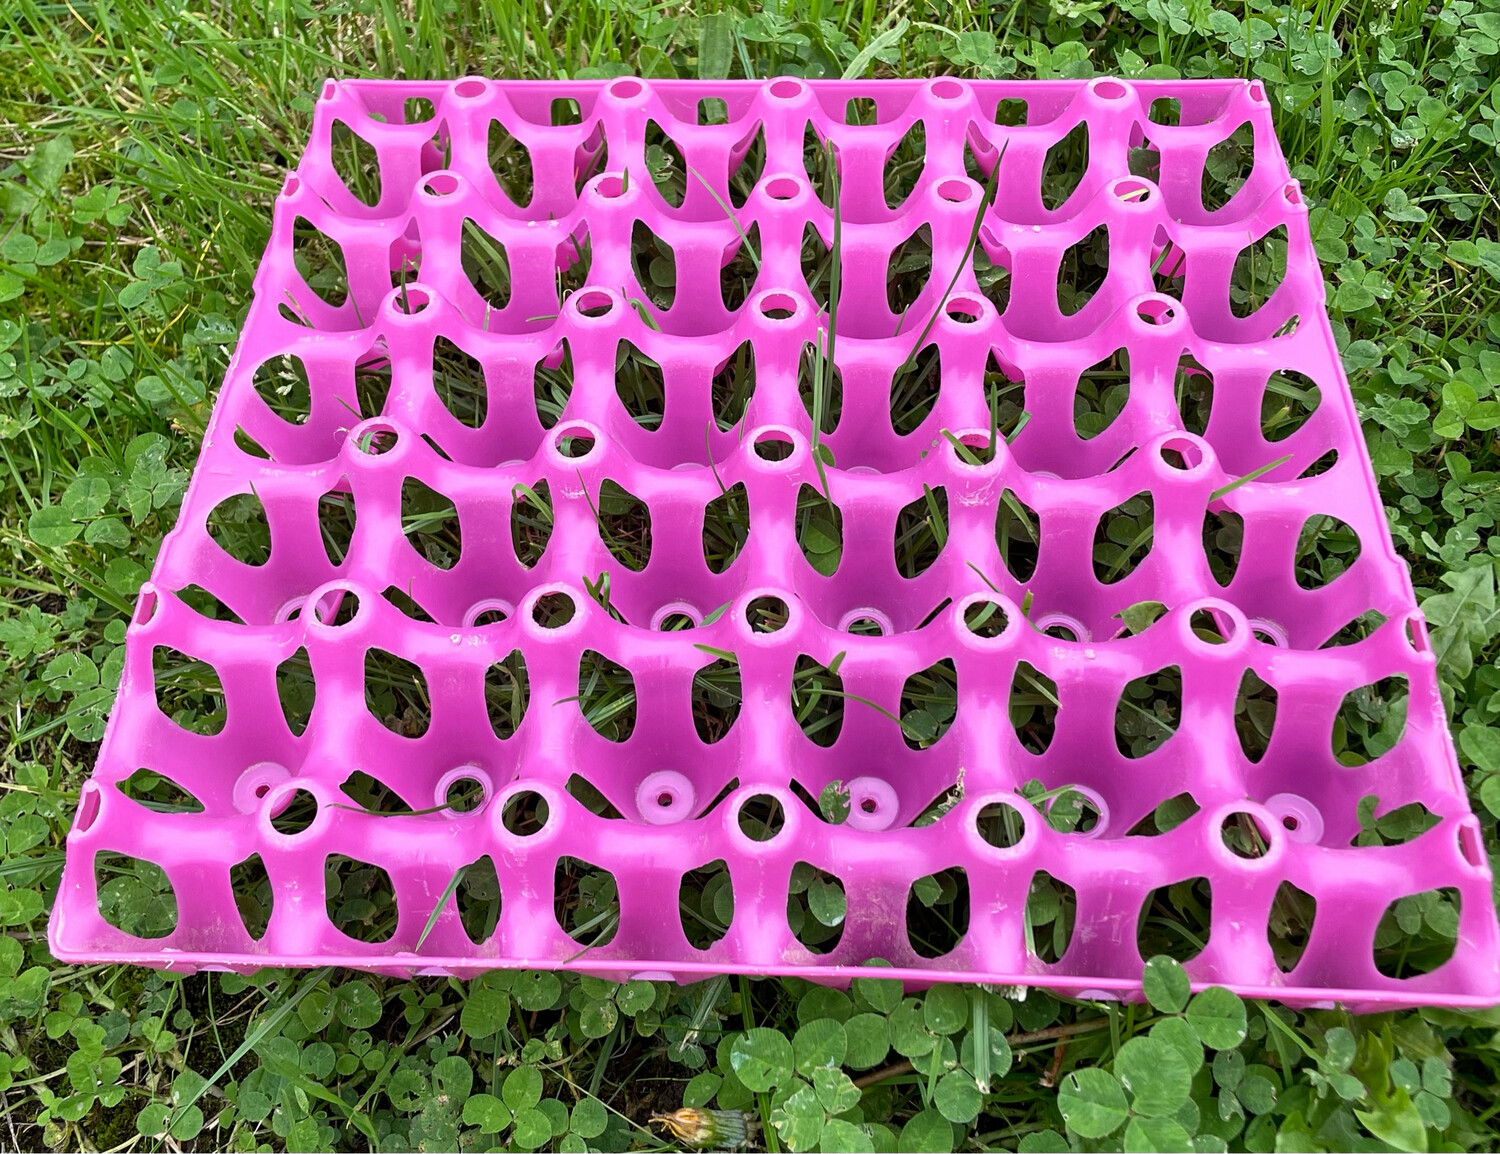 Plastic egg tray - holds 30 eggs